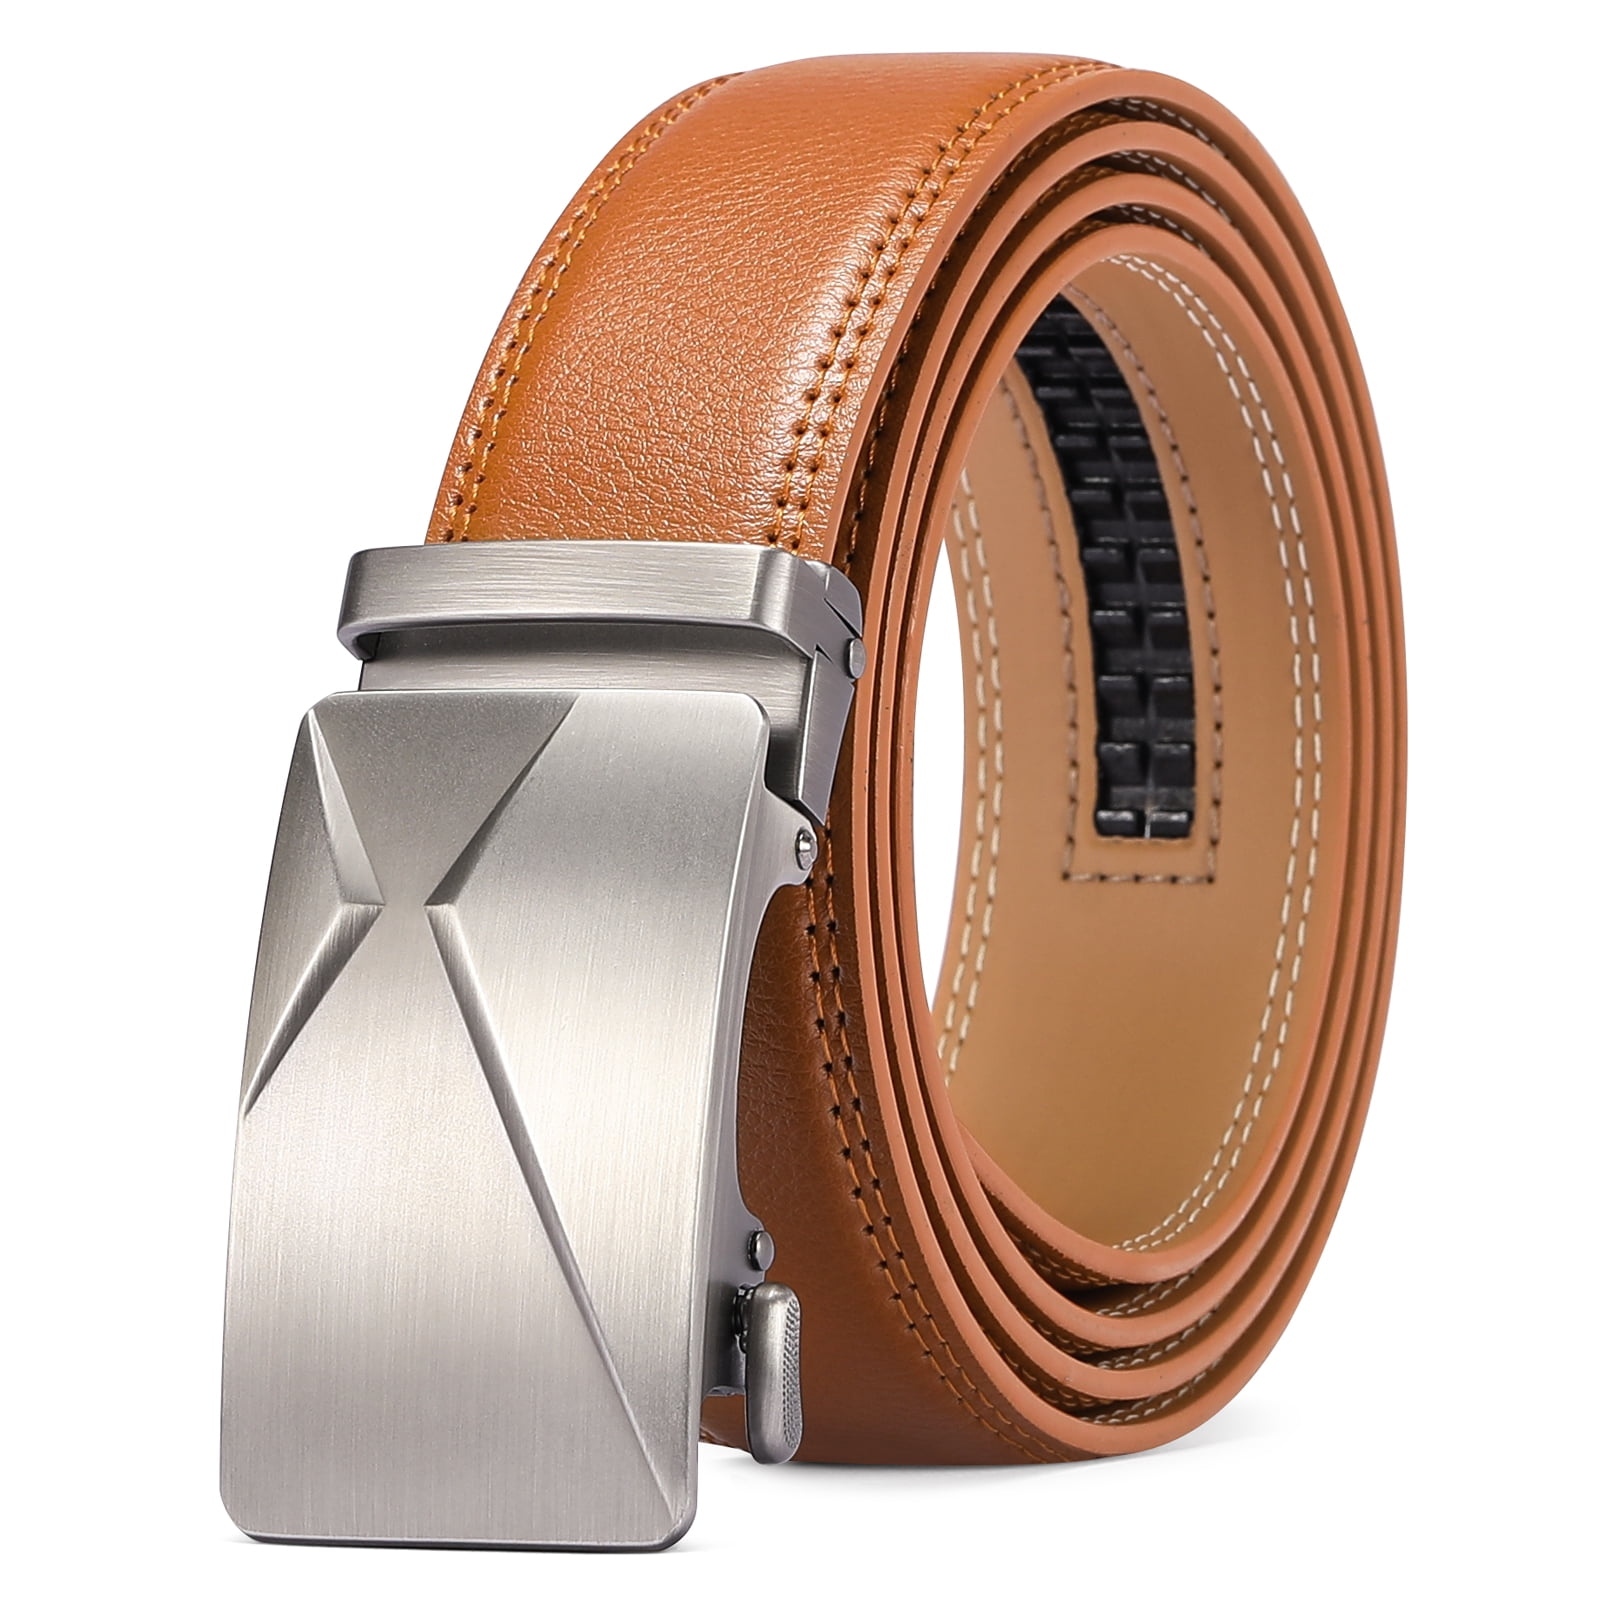 SENDEFN Leather Belt for Men Automatic Ratchet Buckle Slide Dress Casual  Belts 1 3/8'' Wide, Adjustable Trim to Fit 